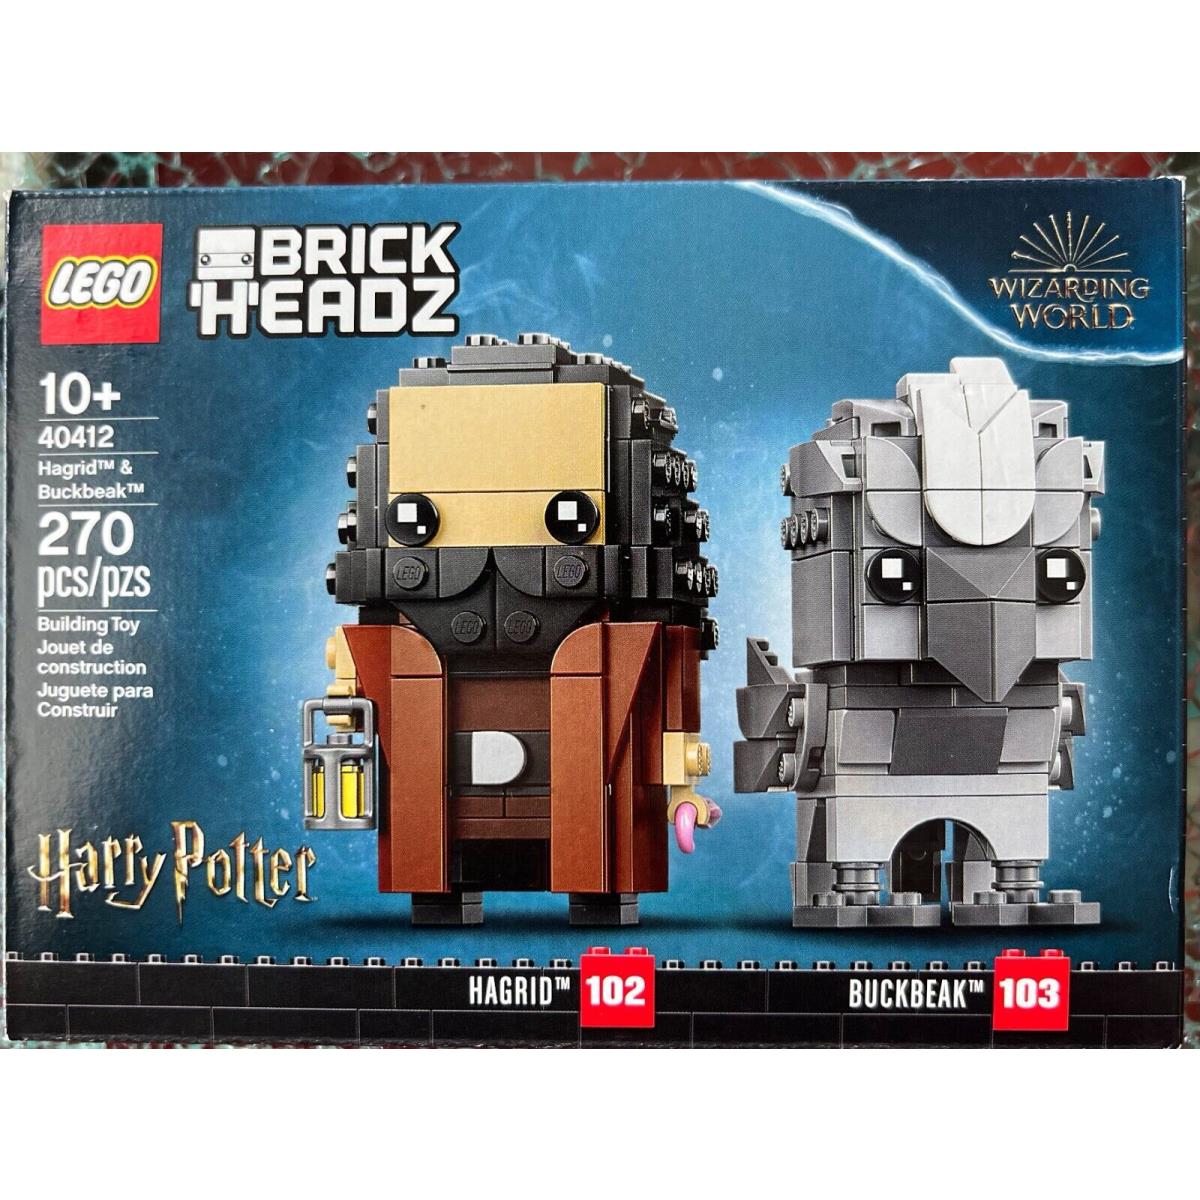 Lego Brickheadz Harry Potter Hagrid Buckbeak 102 103 Set 40412